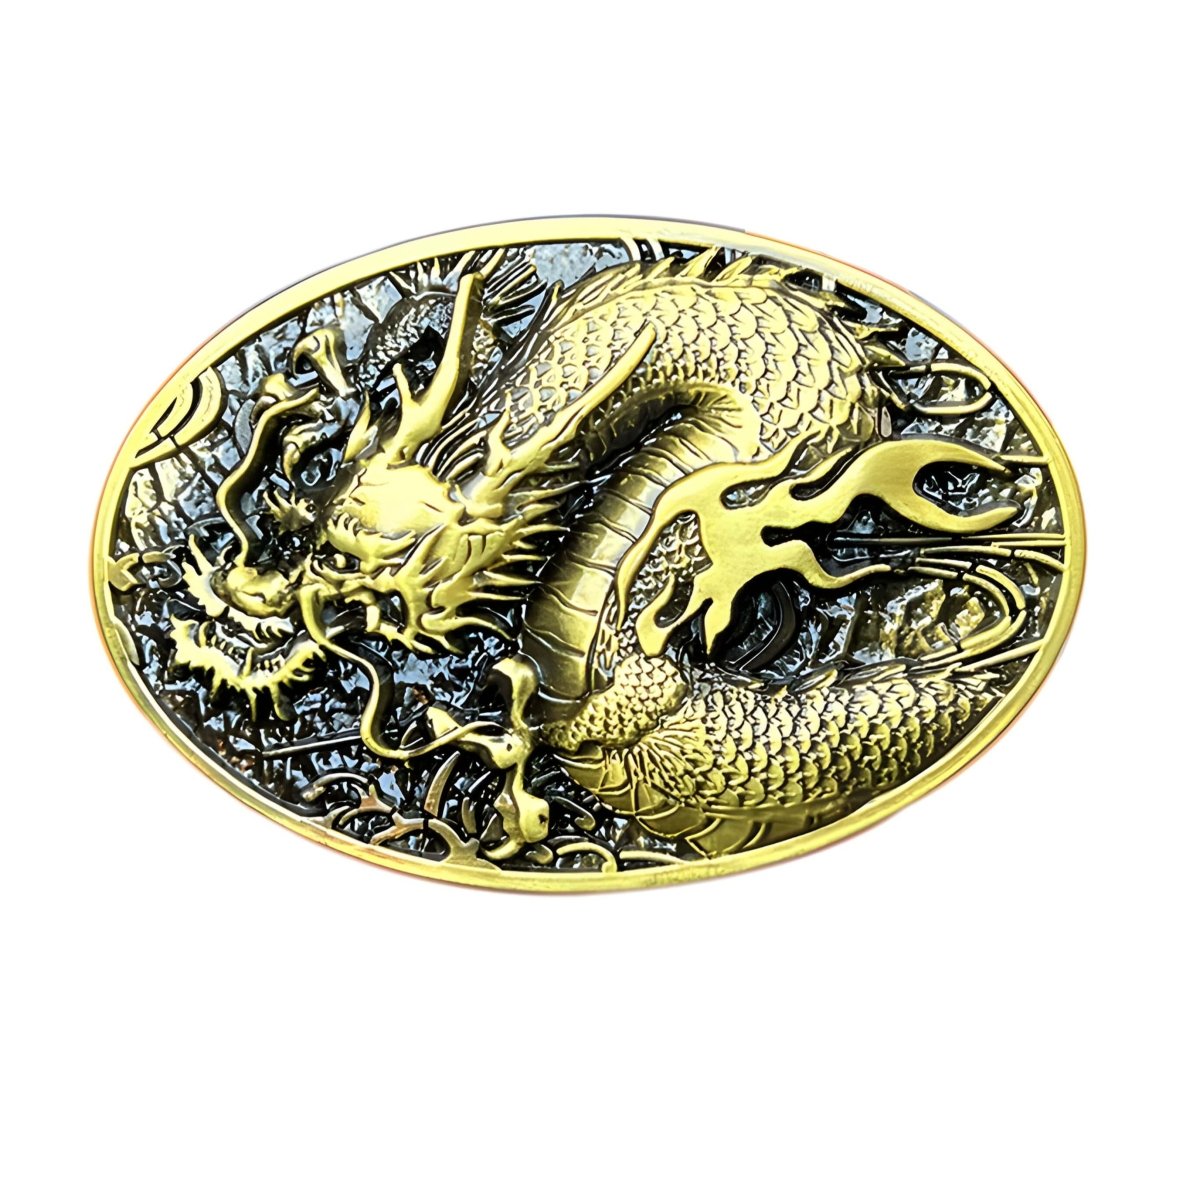 Boucle de ceinture Animal, dragon asiatique, modèle Jerry - La Boutique de la Ceinture